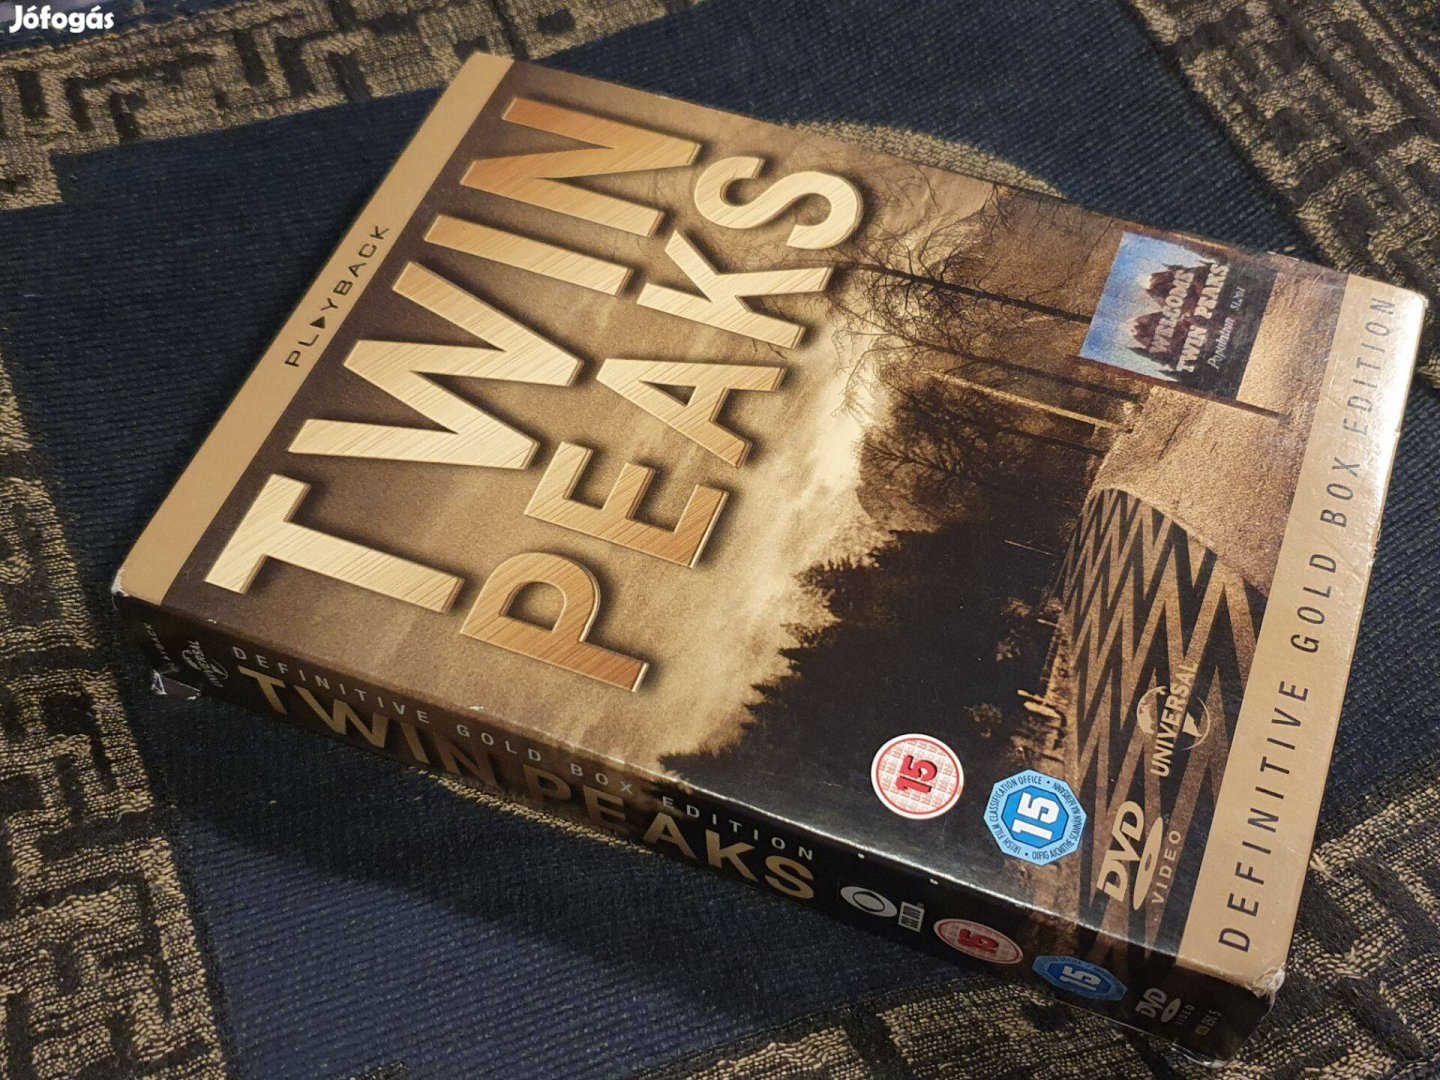 Twin Peaks - Definitive Gold Boxed Edition -10 lemezes, gyűjtői kiadás